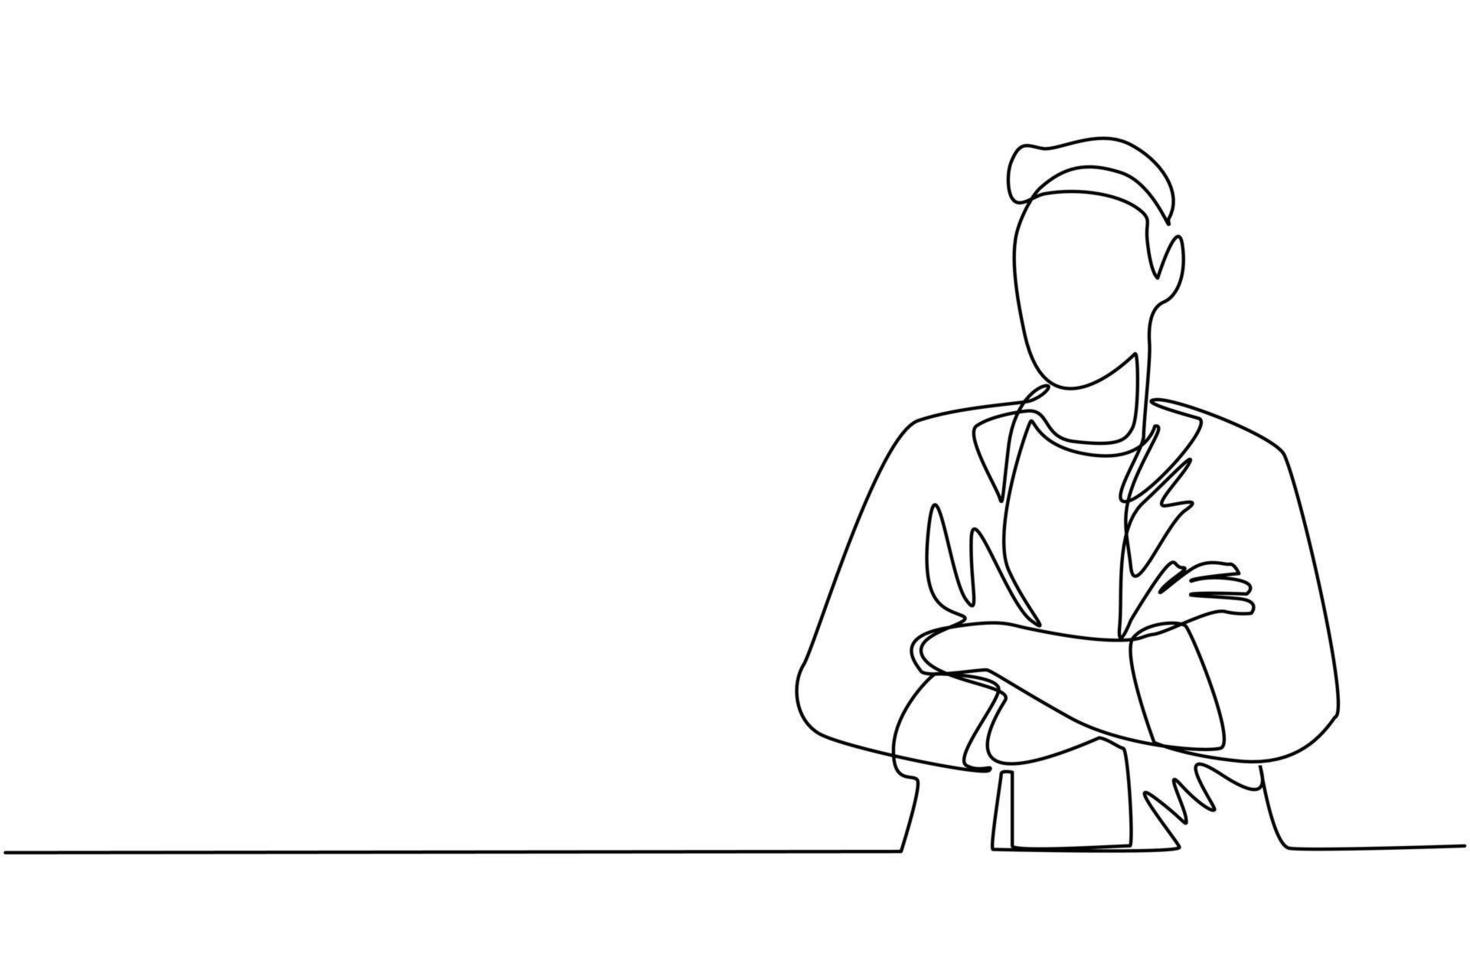 fortlaufende einzeilige zeichnung junger geschäftsmann, der mit verschränkten armen steht. lächelnder gutaussehender mann in lässiger kleidung mit verschränkten armen stehend isoliert. einzeiliges zeichnen design vektorgrafik illustration vektor